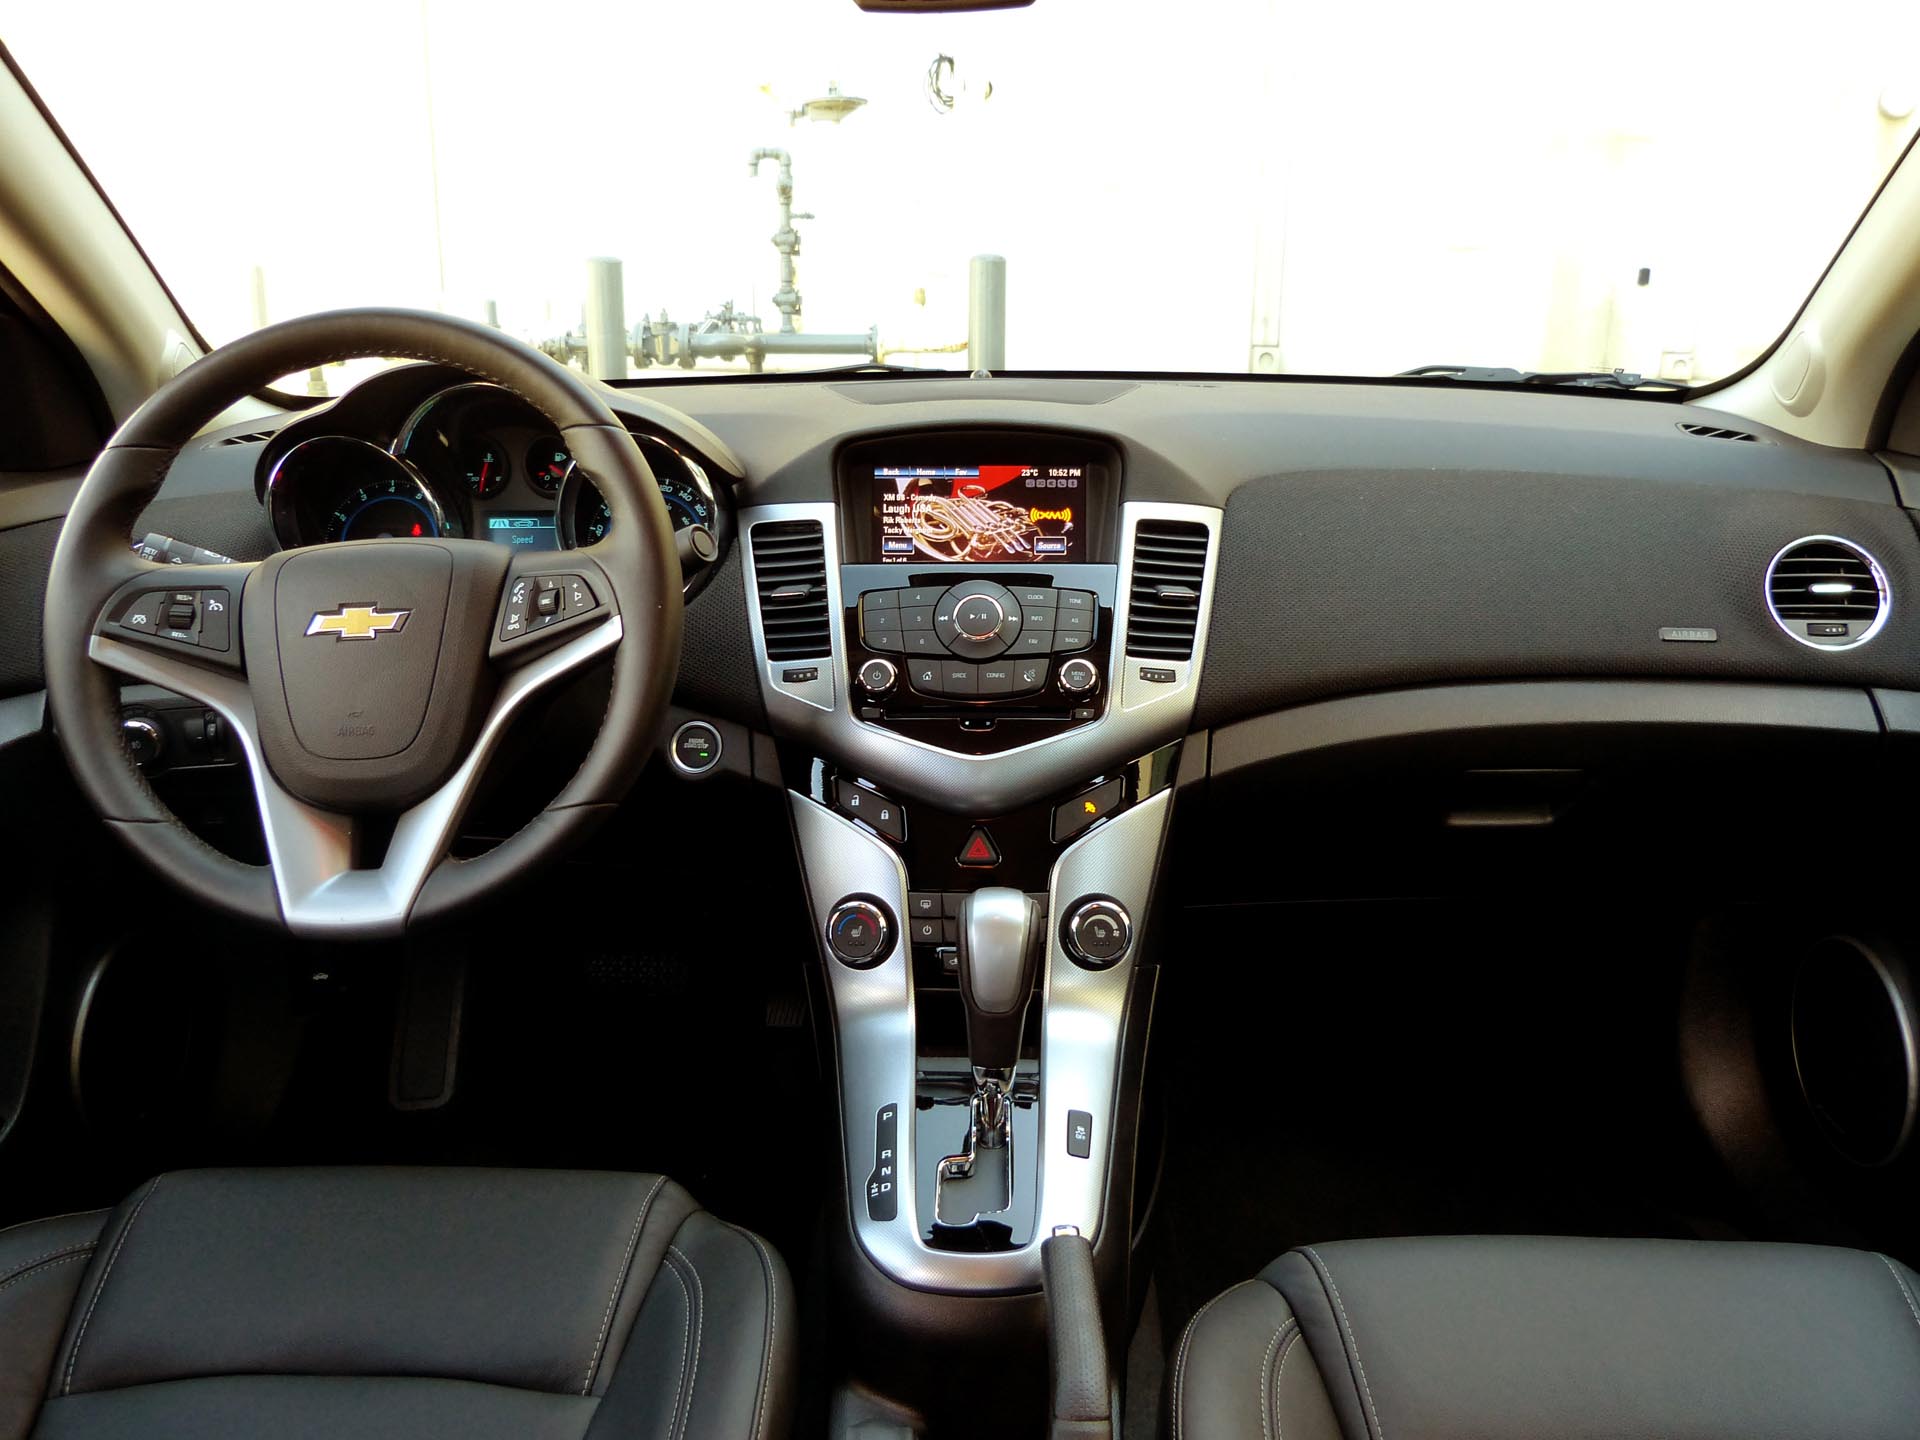 Chevrolet Cruze 2014 салон